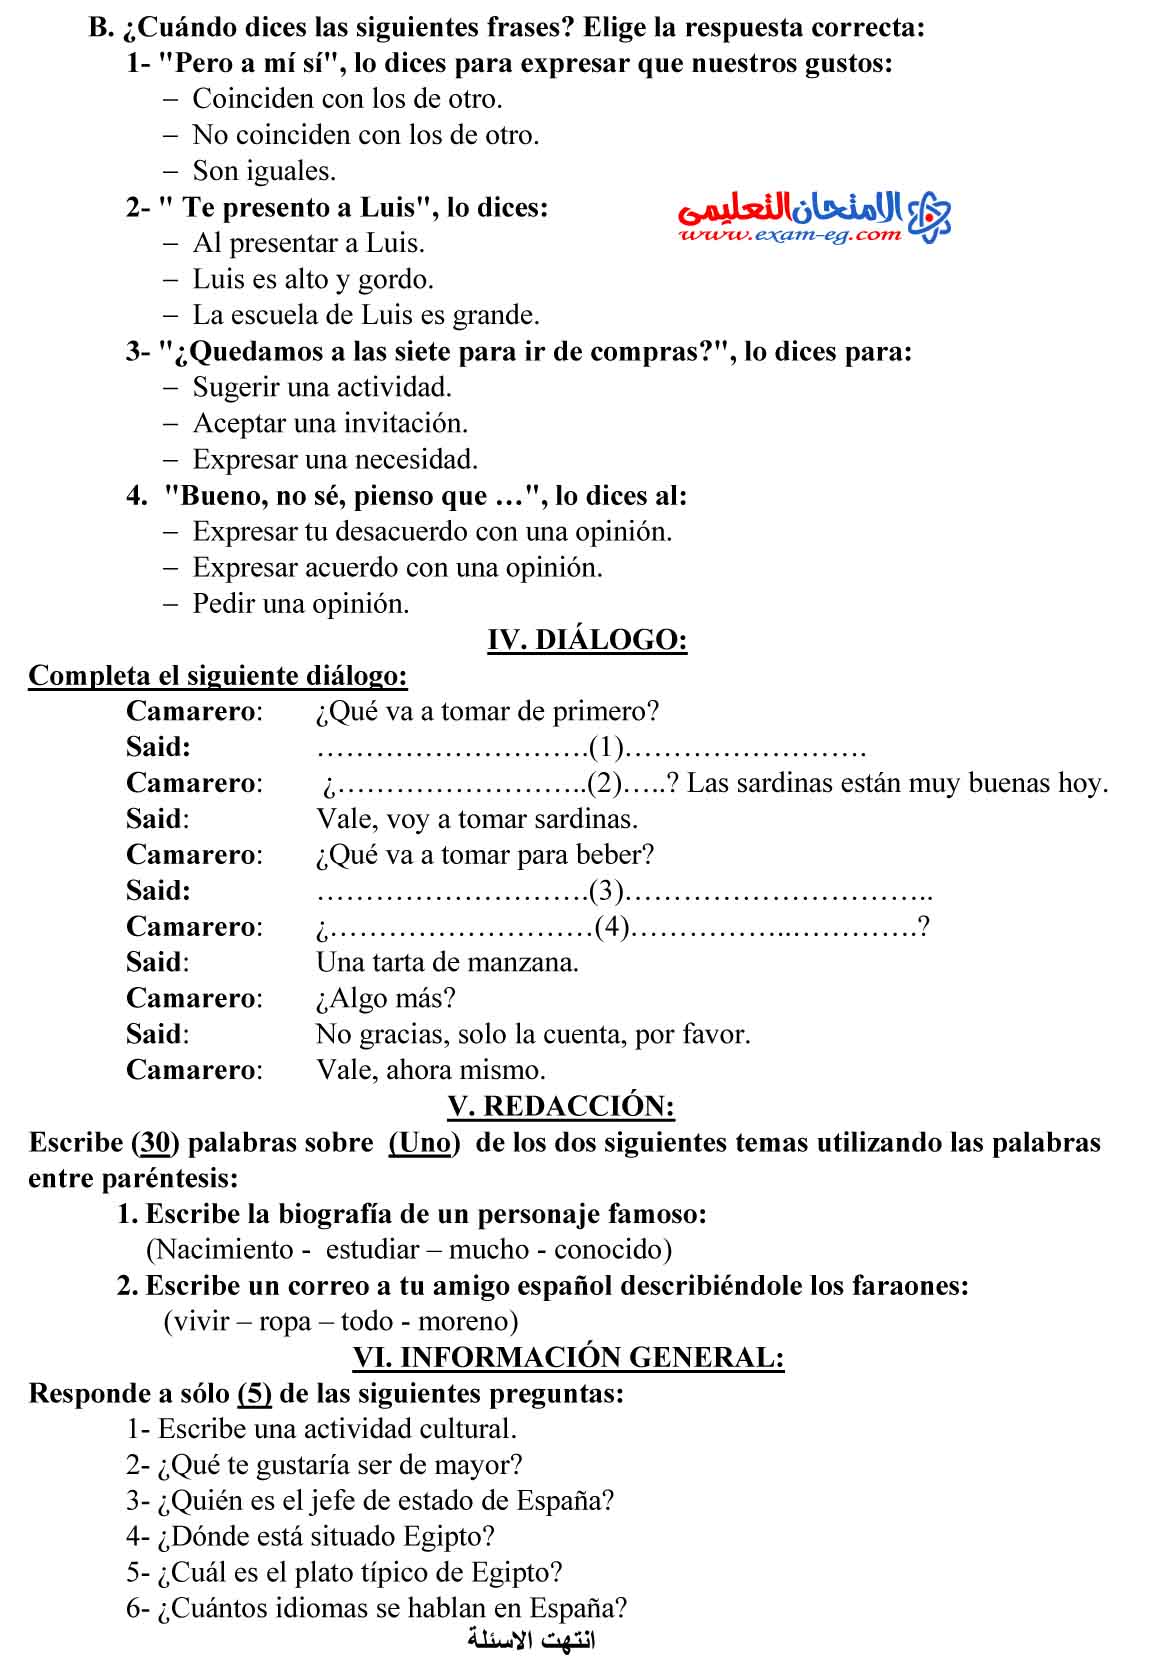 امتحان الوزارة في اللغة الاسبانية 3